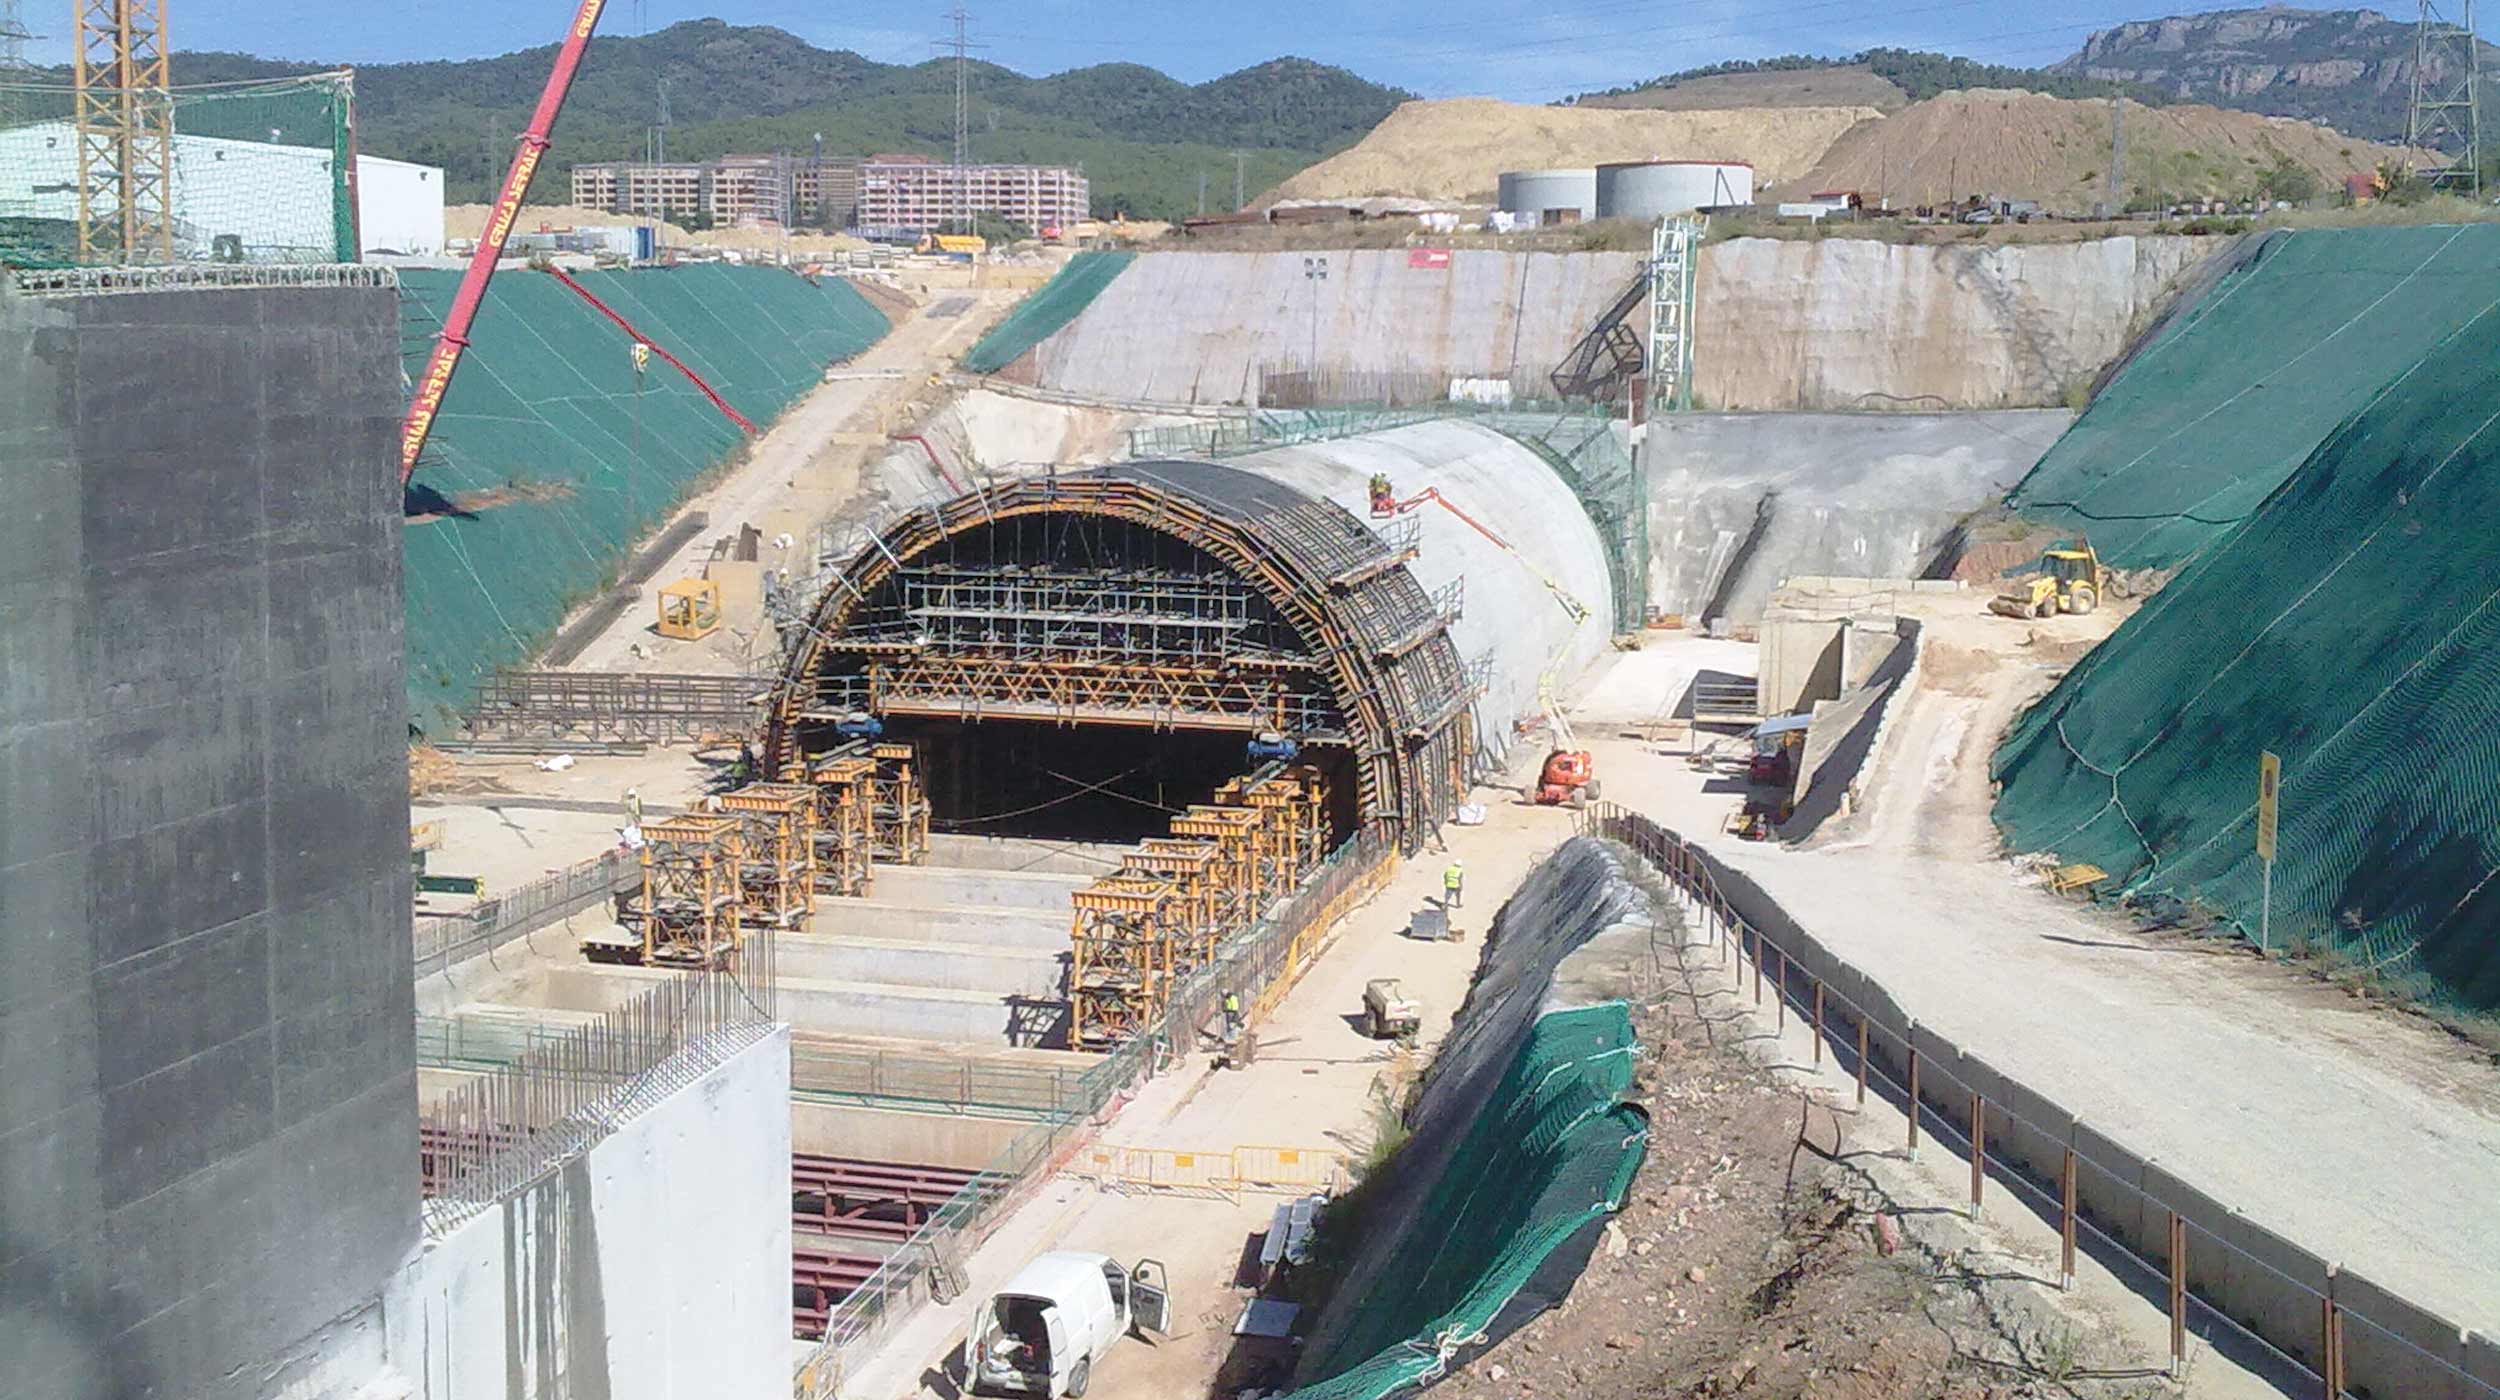 Este falso túnel faz parte de um projeto de renovação para o transporte público de Terrassa.